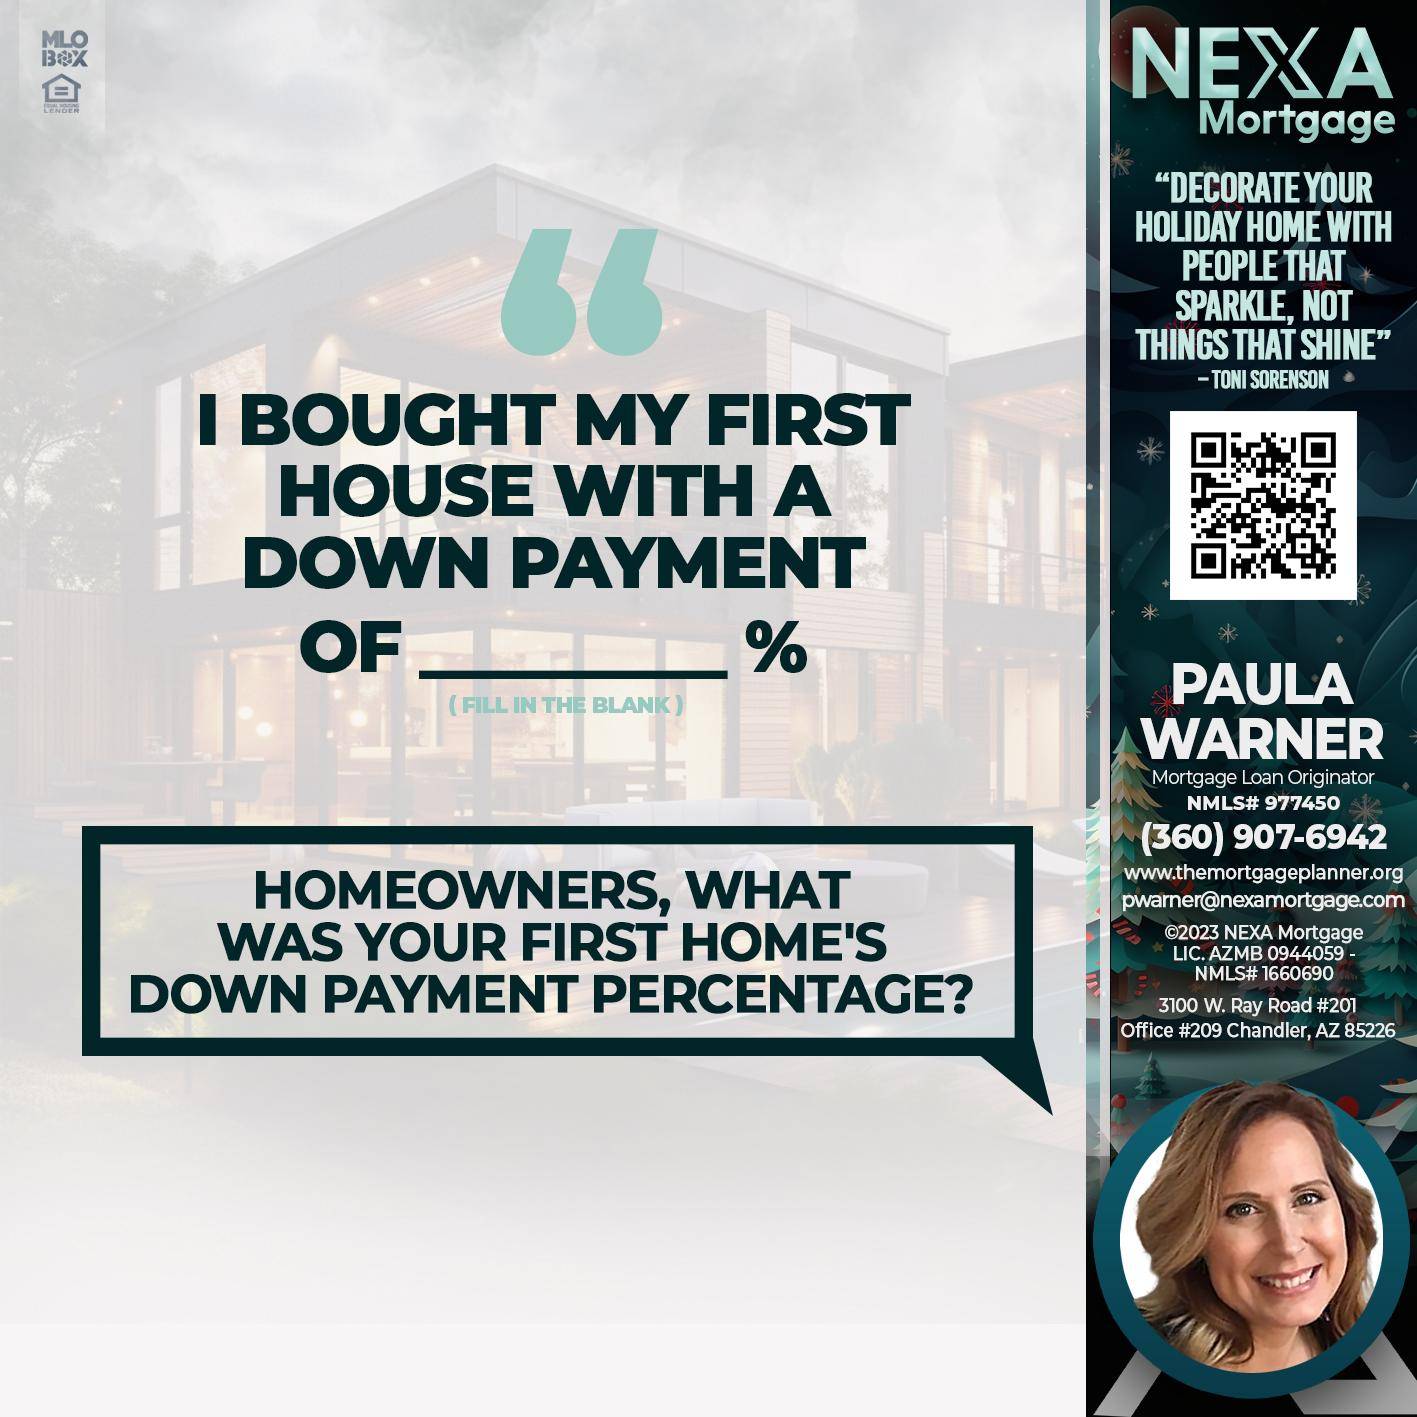 DOWN PAYMENT - Paula Warner -Mortgage Loan Originator